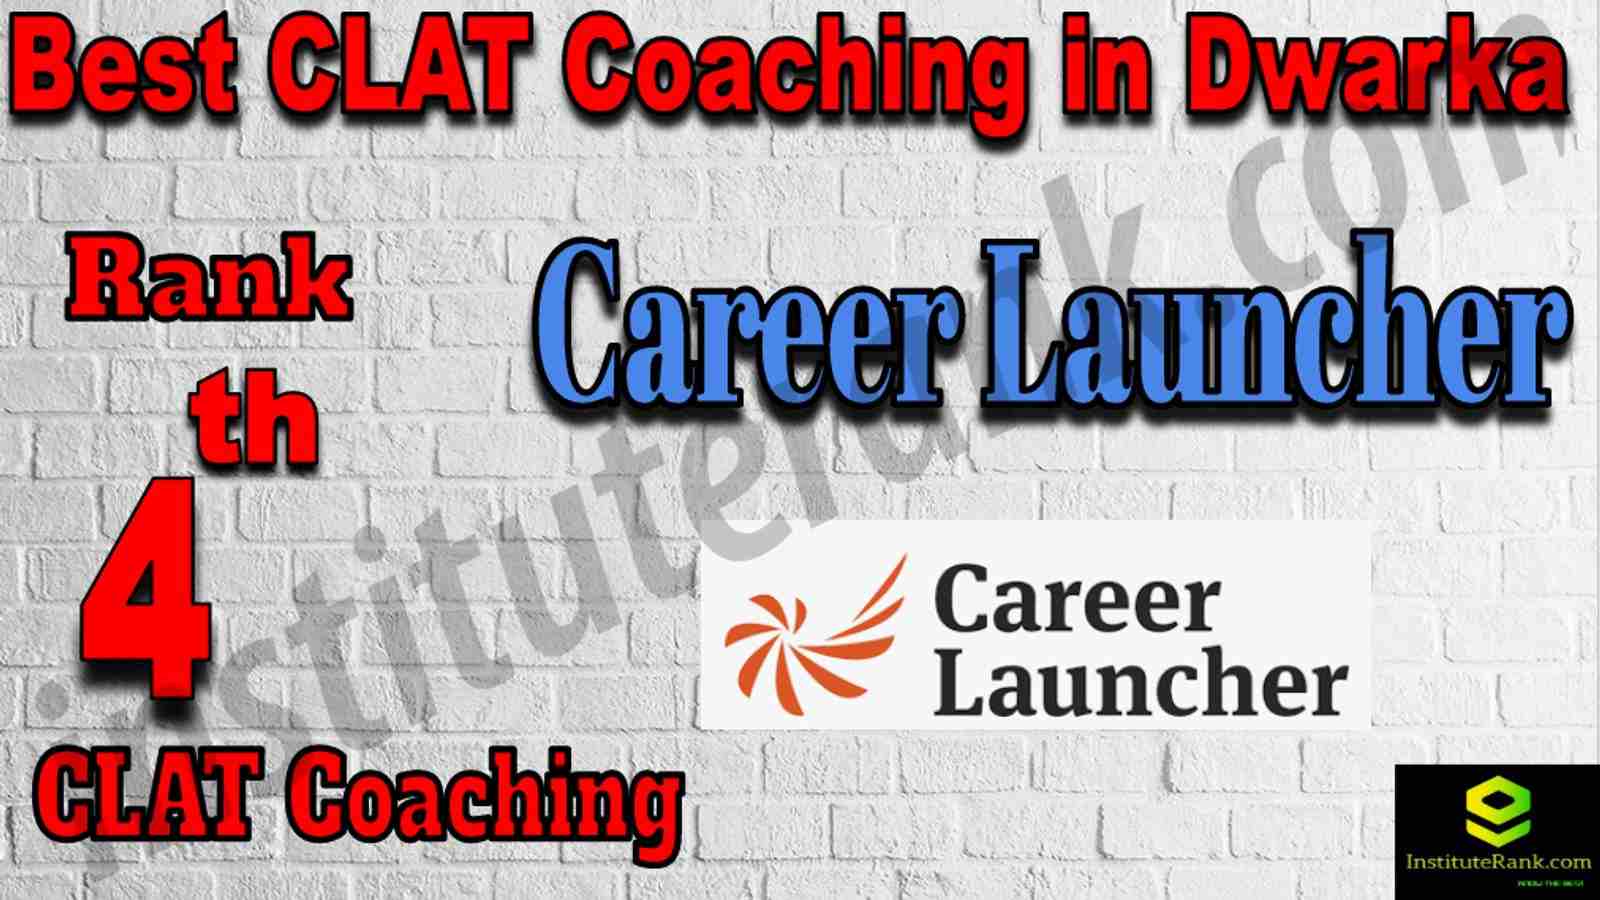 4th Best CLAT Coaching in Dwarka